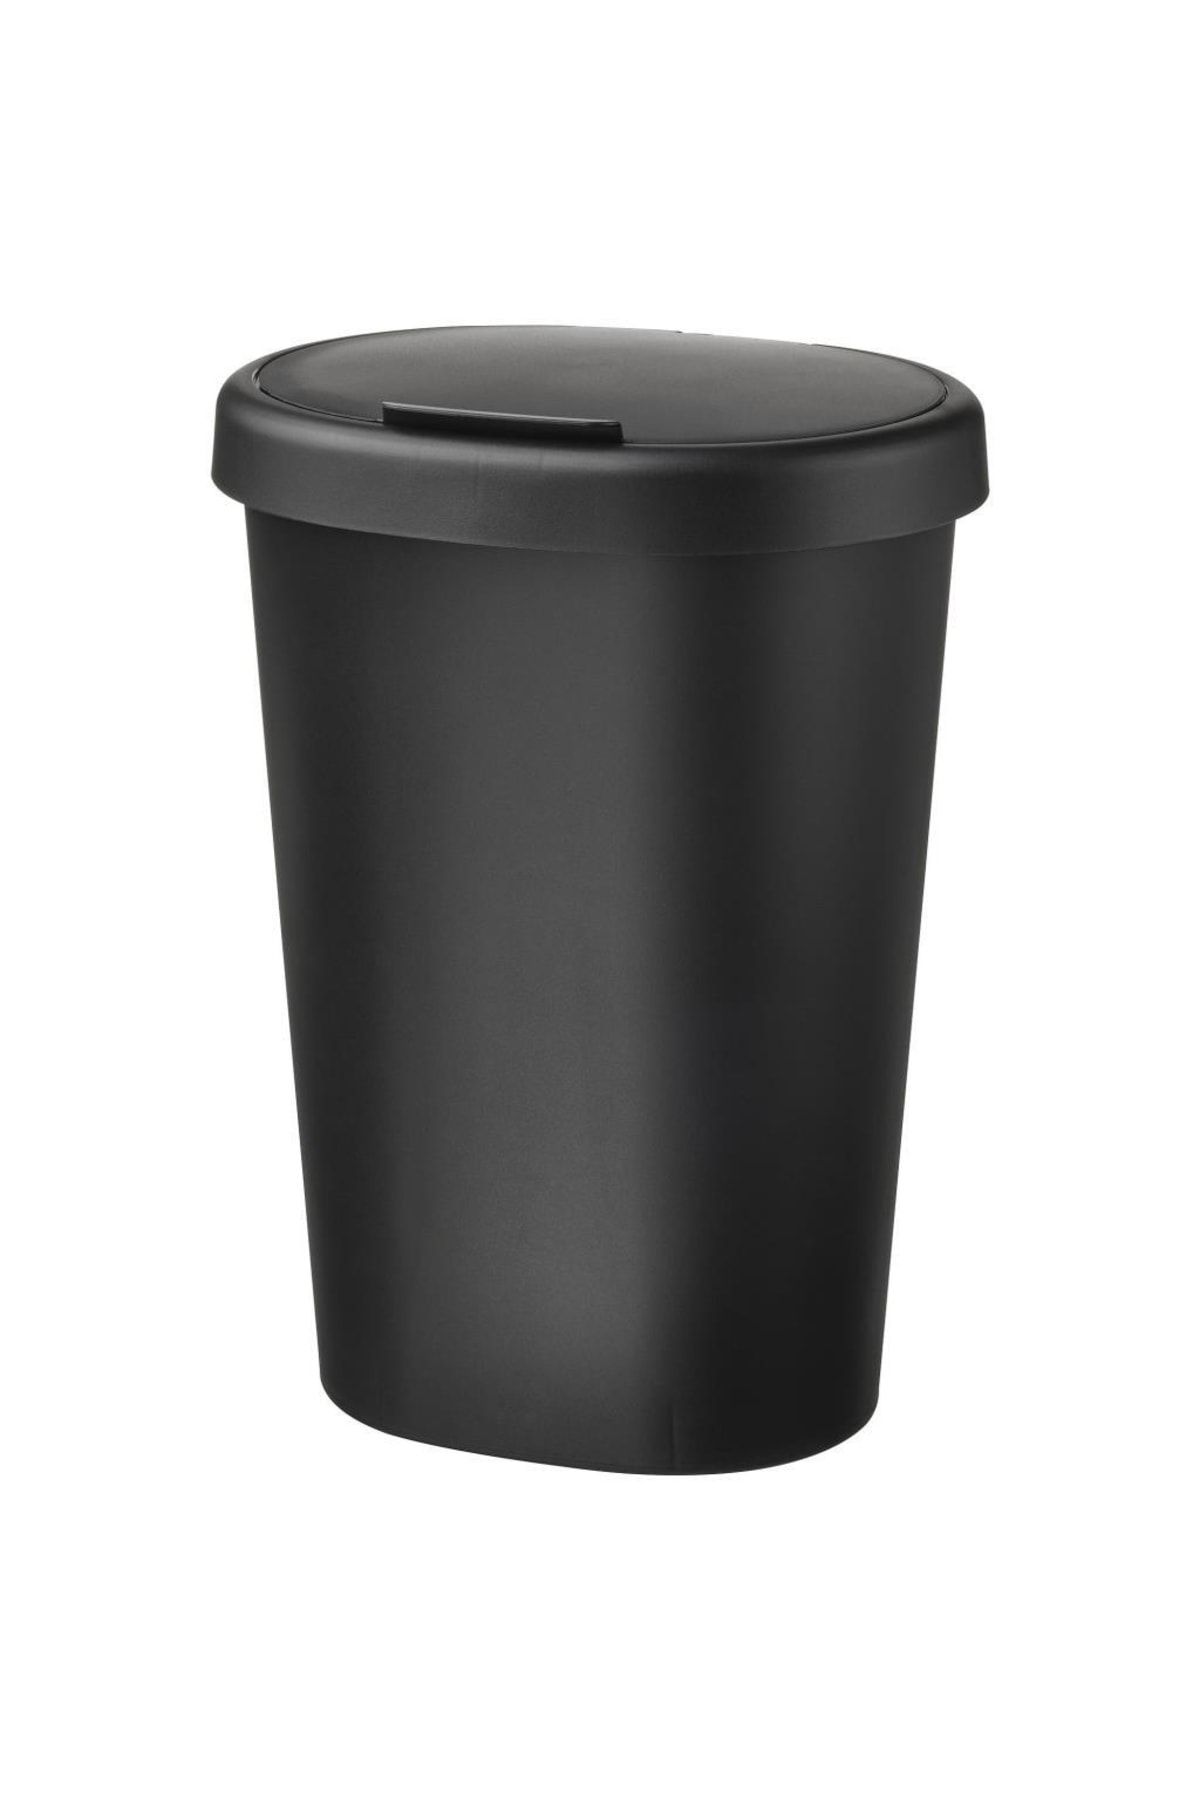 IKEA Hölass Plastik Çöp Kutusu - Siyah - 8 Lt